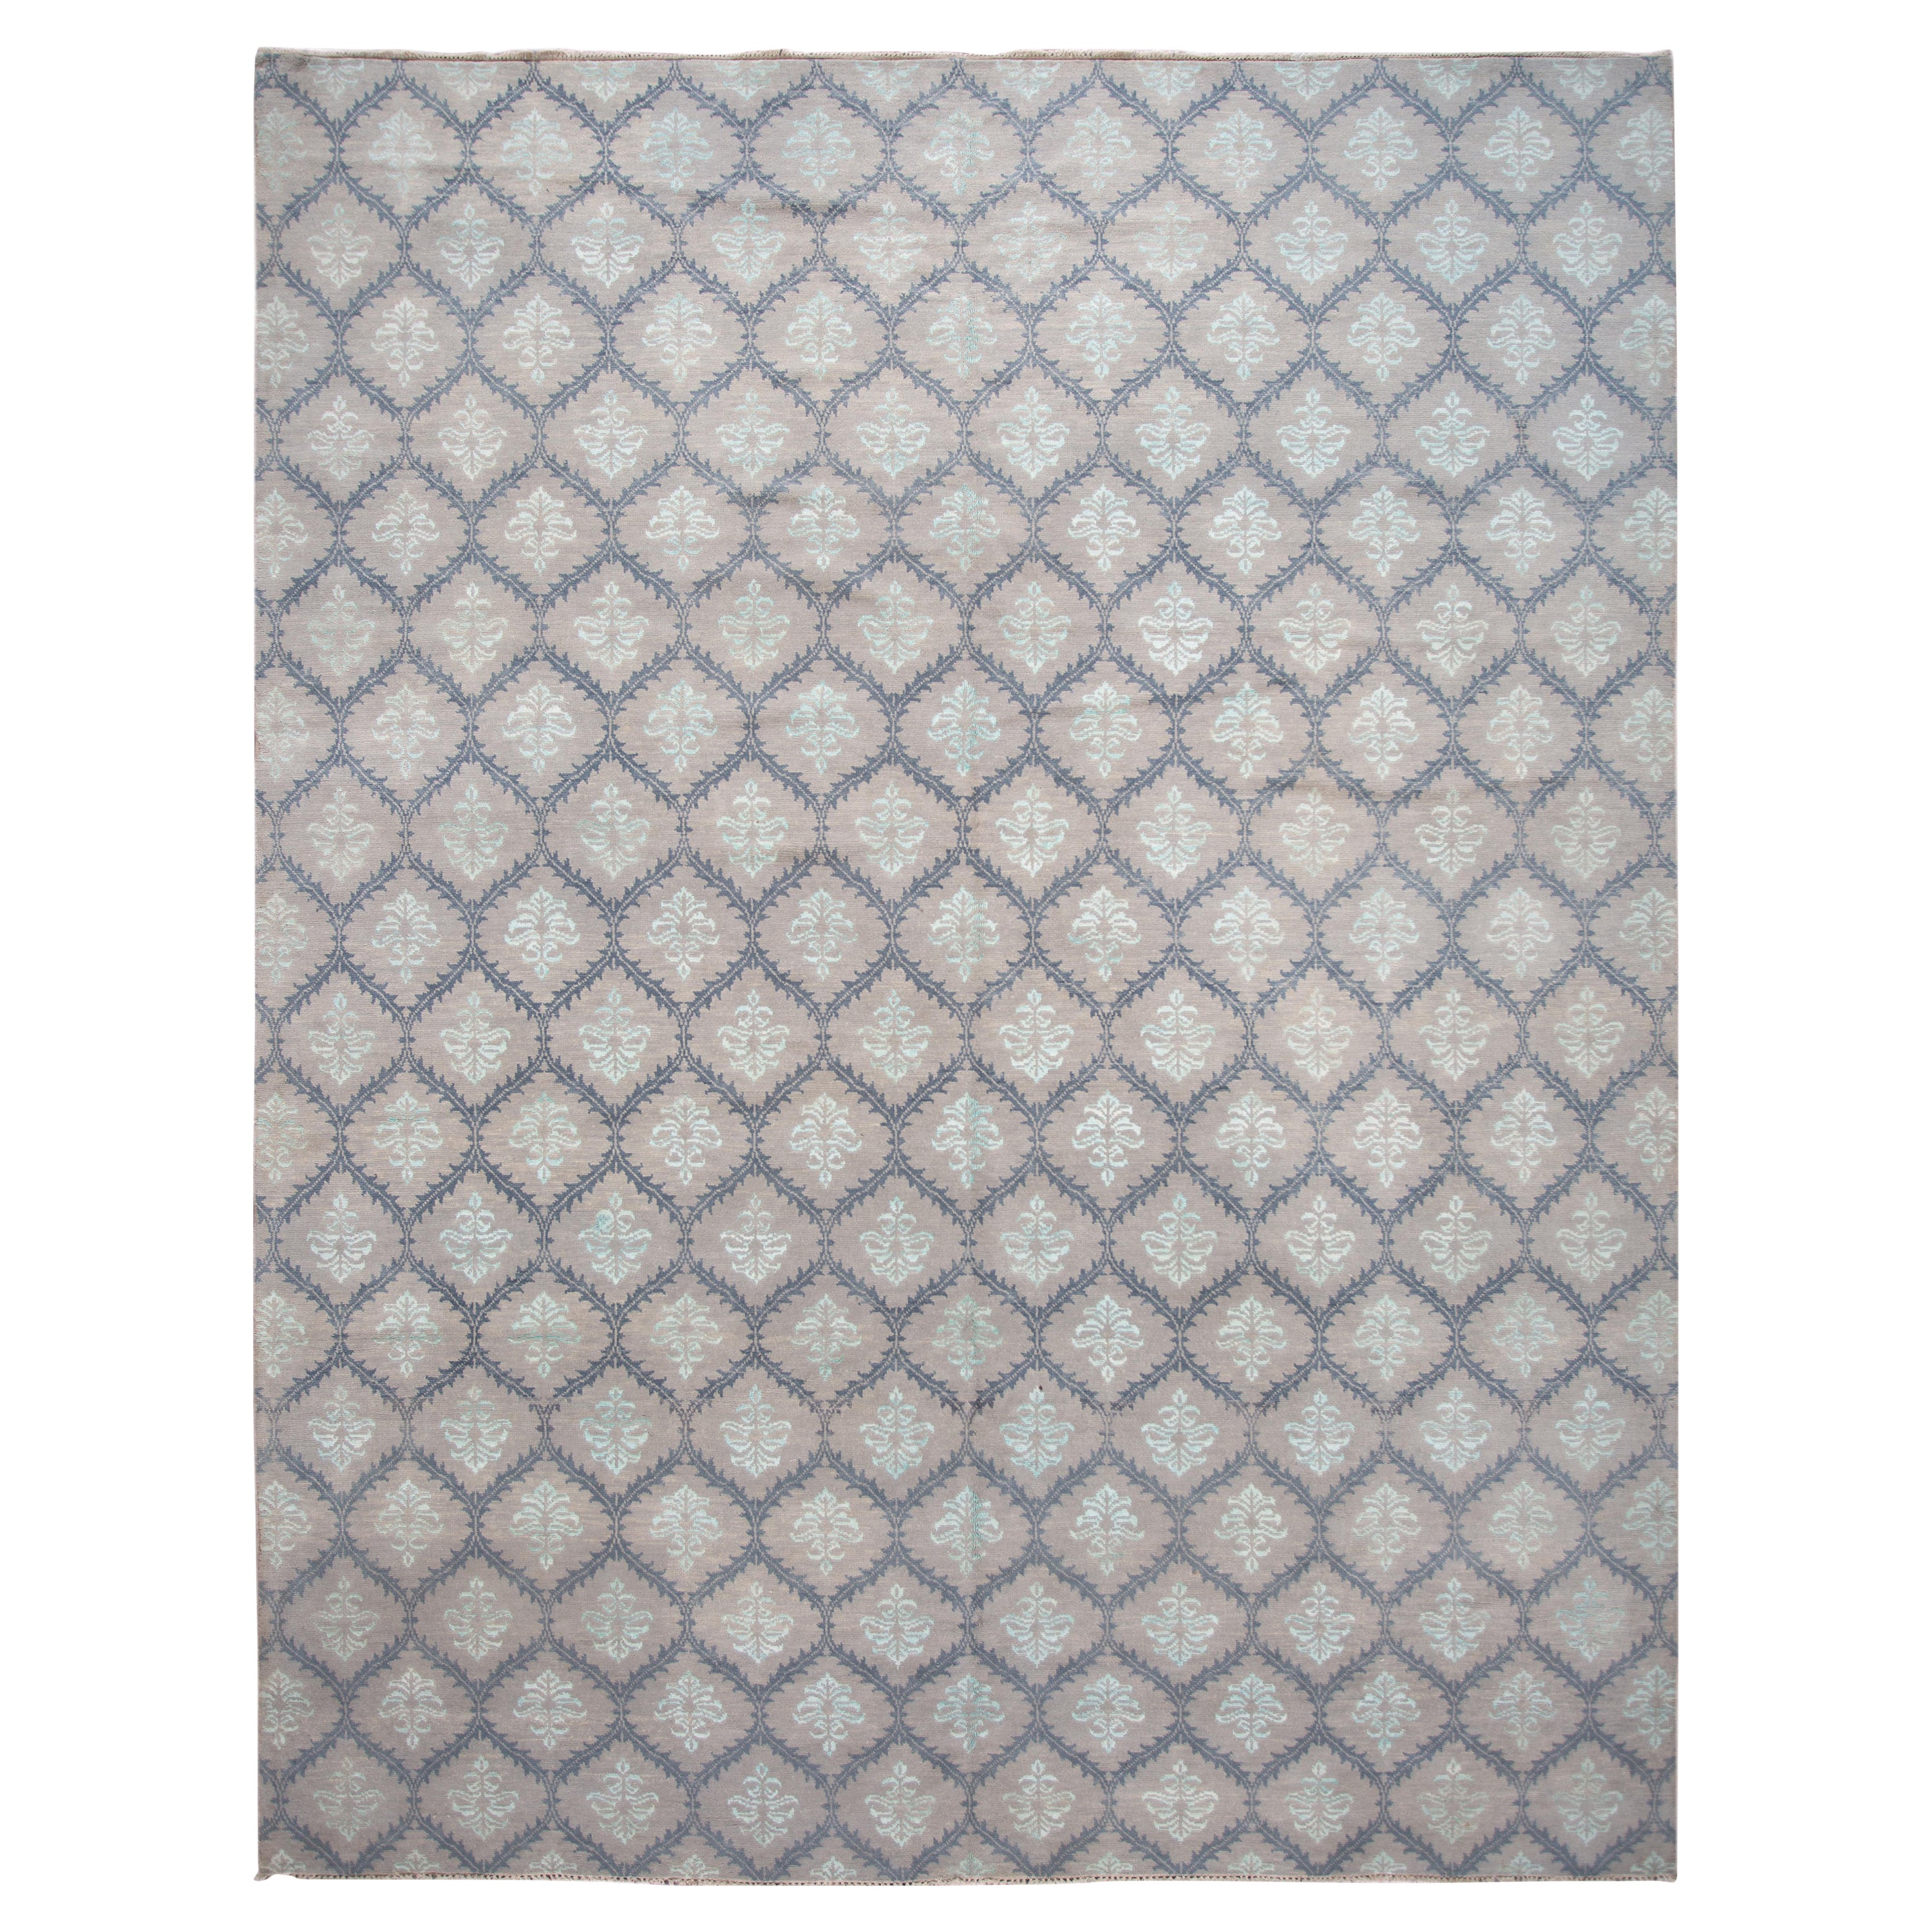 Contemporary Woll- und Seidenteppich in Grautönen mit modernem geometrischem Muster